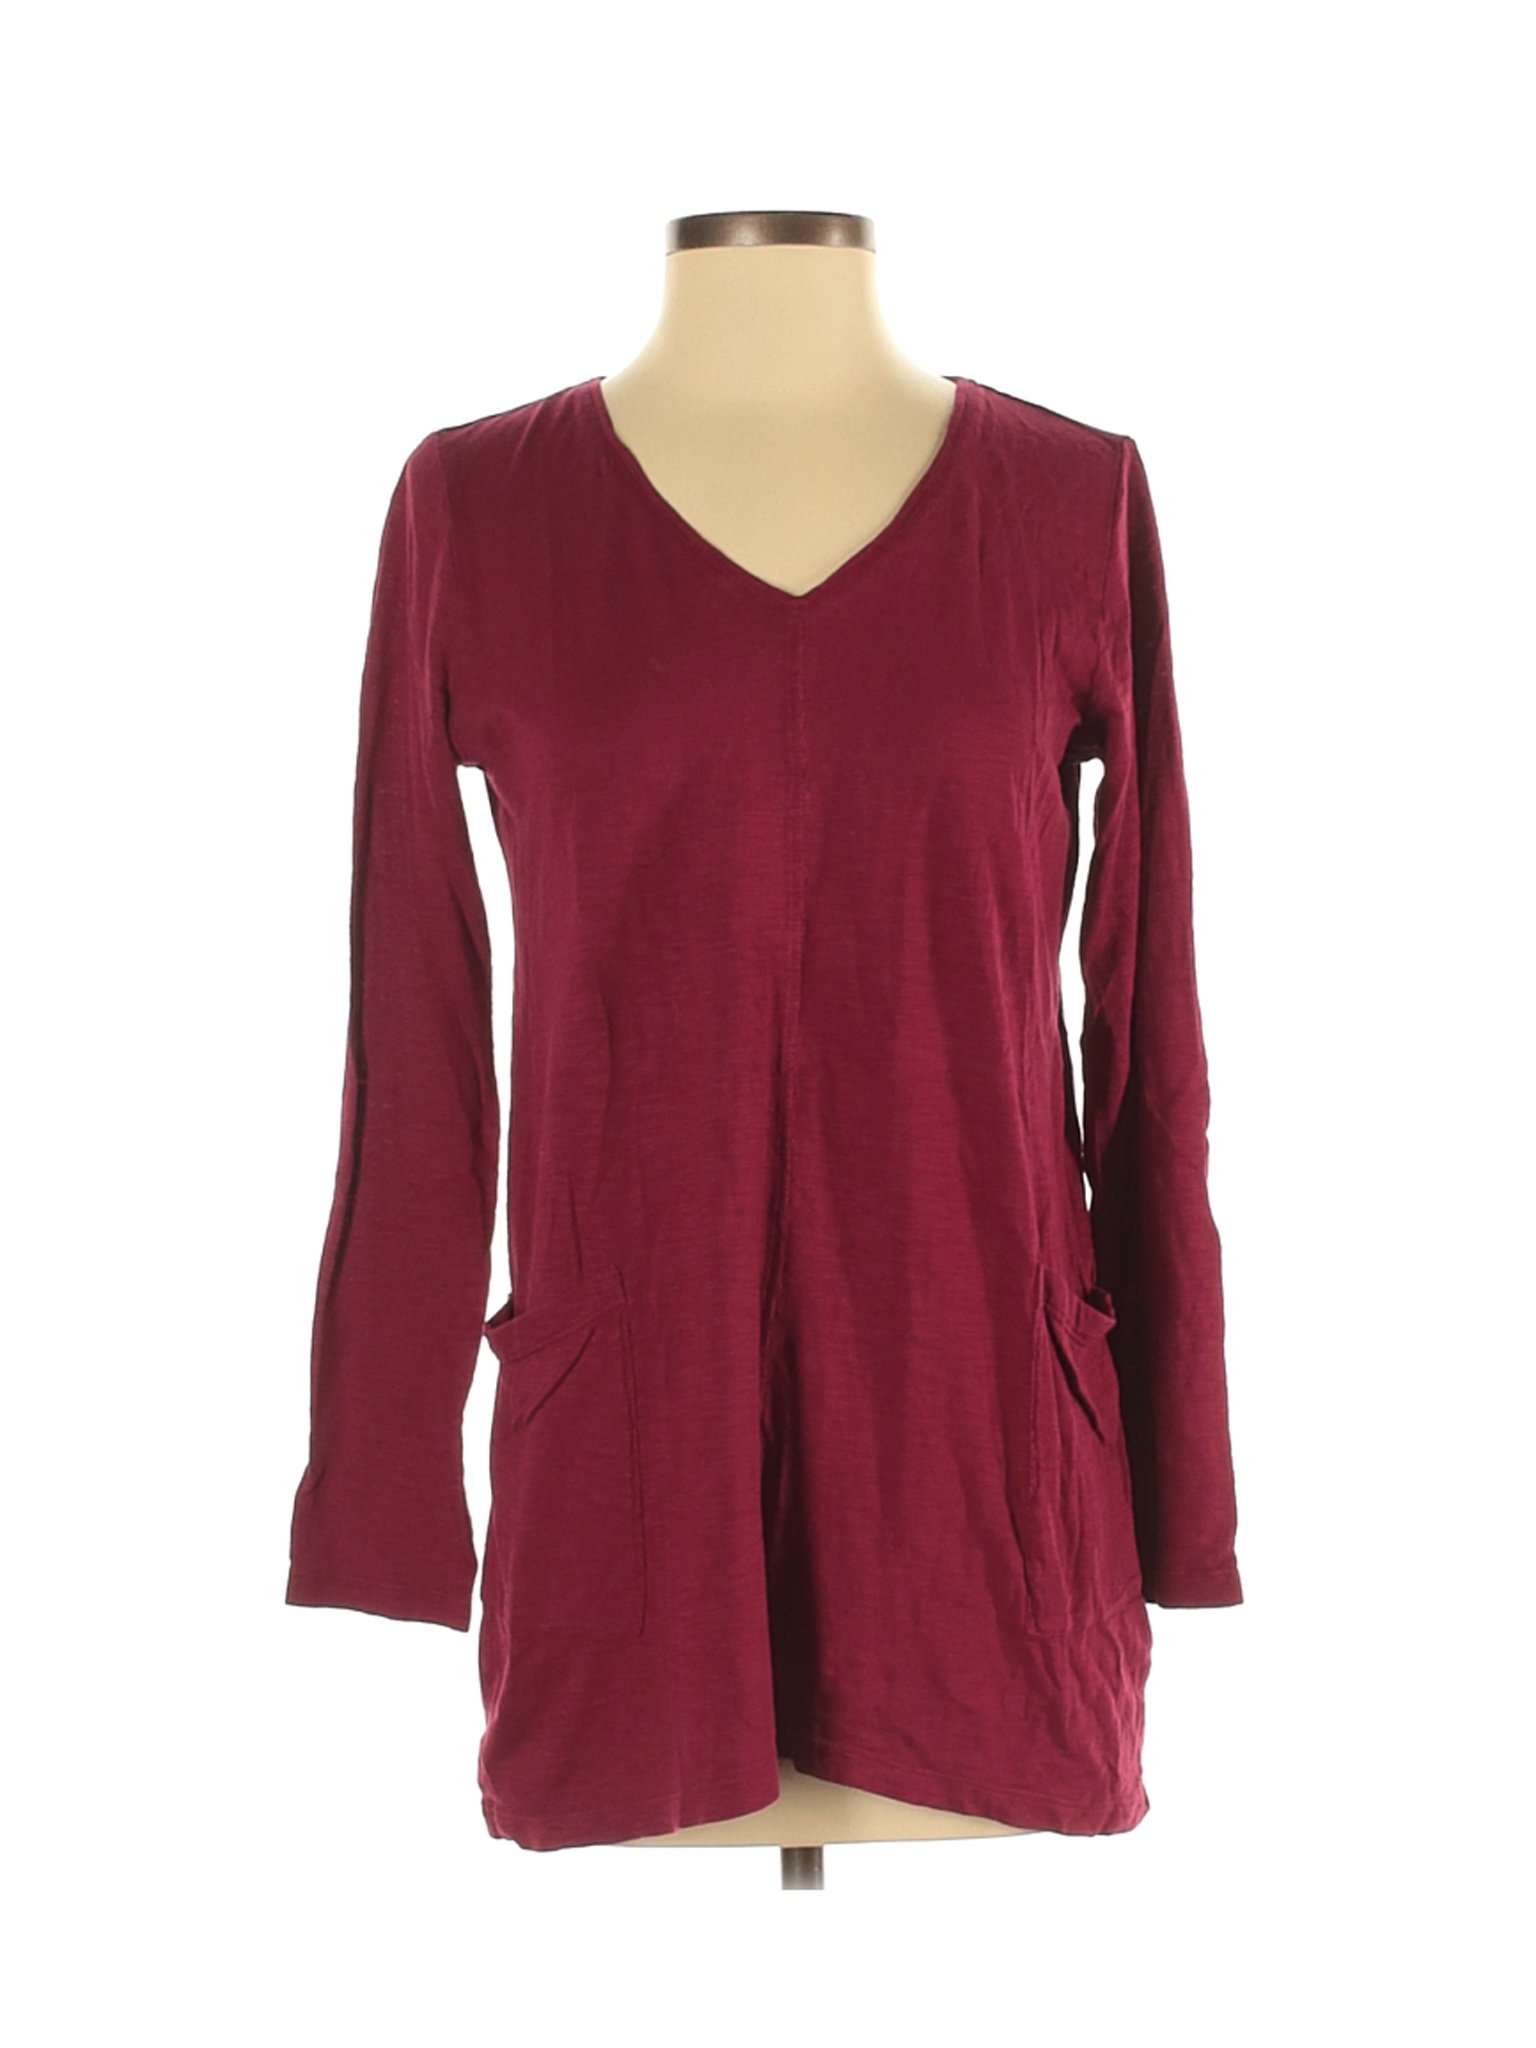 J.Jill Women Red 3/4 Sleeve Top S | eBay